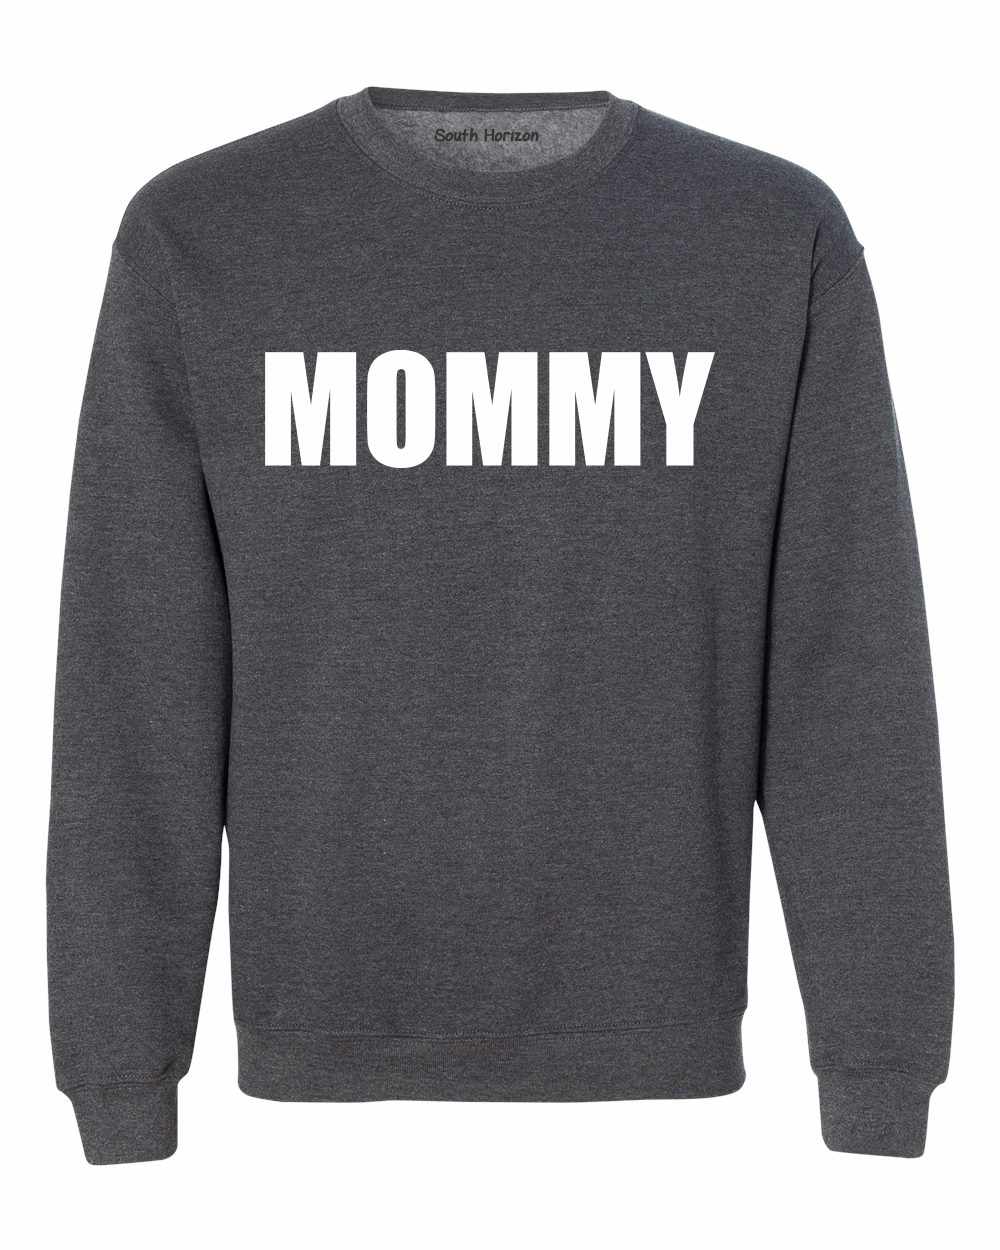 MOMMY Sweat Shirt (#1077-11)